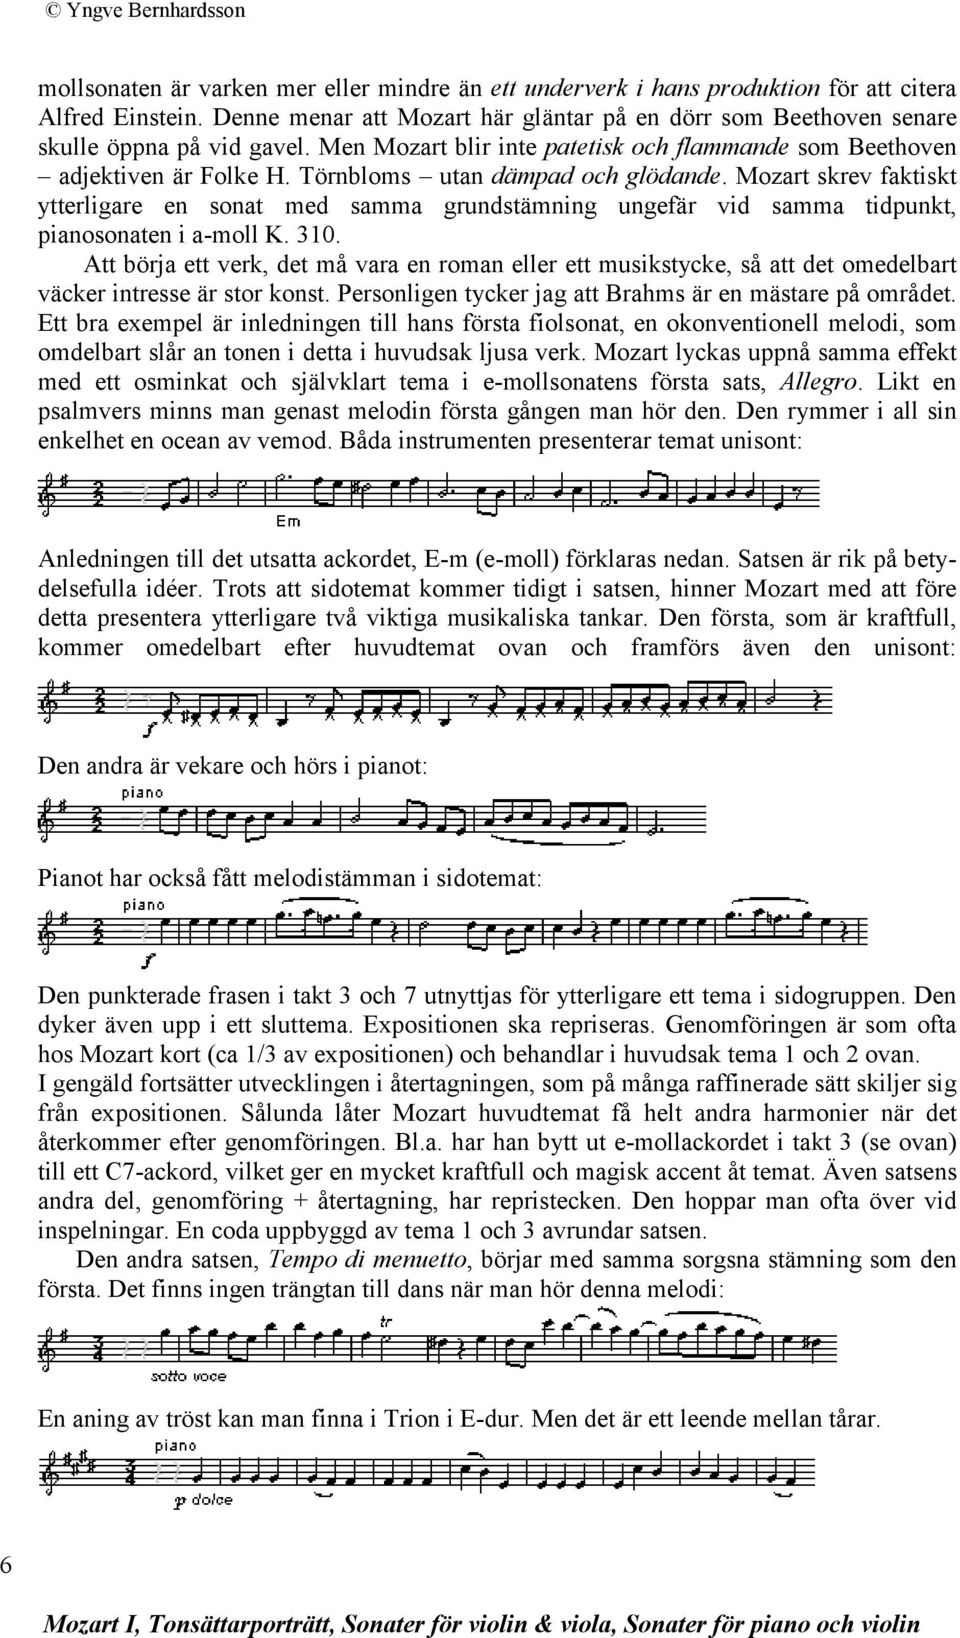 Mozart skrev faktiskt ytterligare en sonat med samma grundstämning ungefär vid samma tidpunkt, pianosonaten i a-moll K. 310.